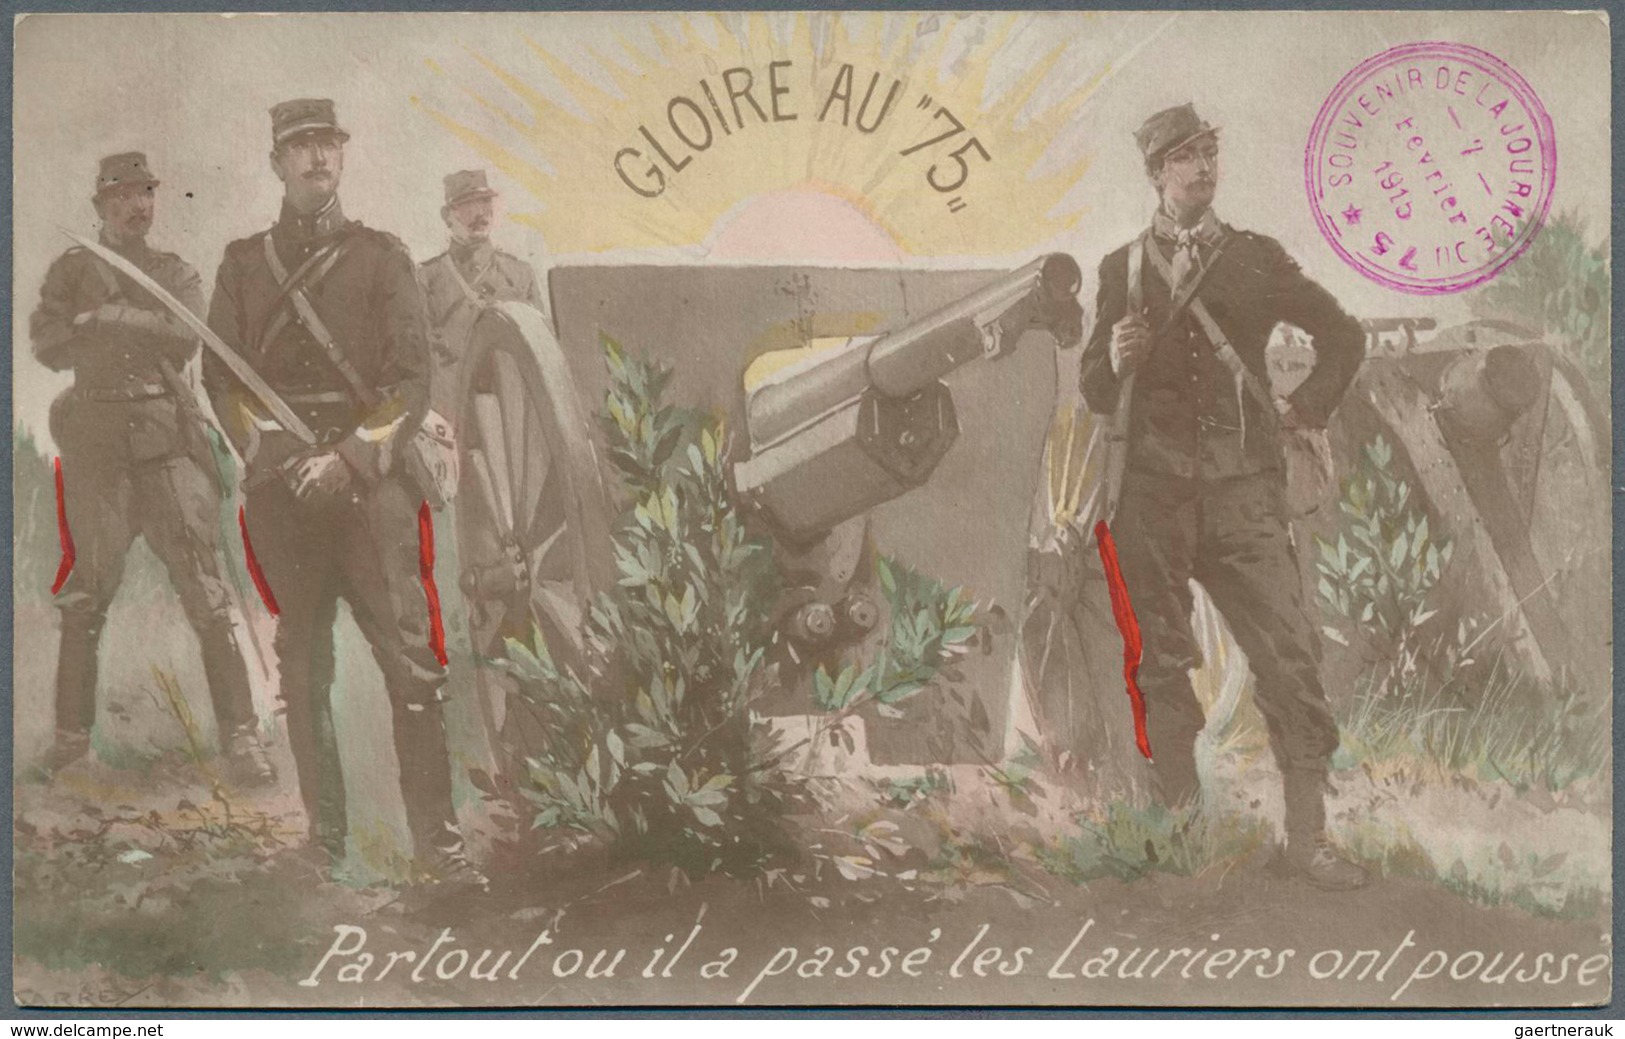 Ansichtskarten: Motive / Thematics: 1. WELTKRIEG, Sammlung von französischen Glückwunschkarten mit m